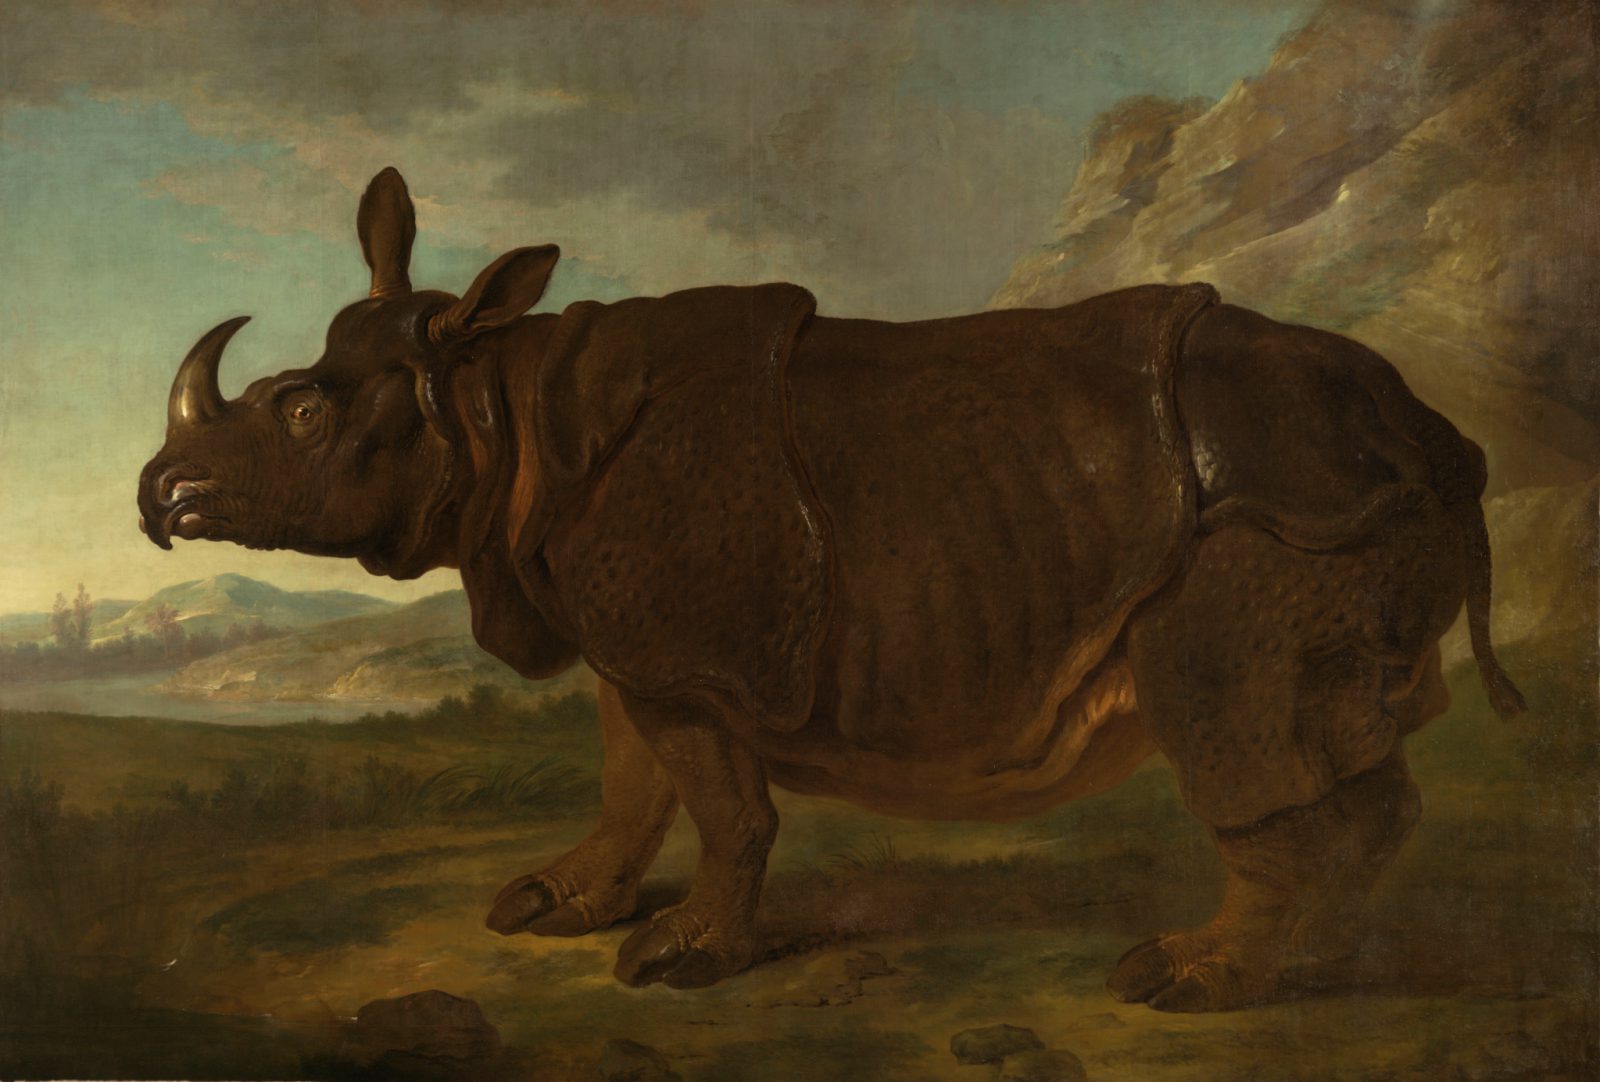 Clara est un rhinocéros indien femelle peint par Jean-baptiste Oudry